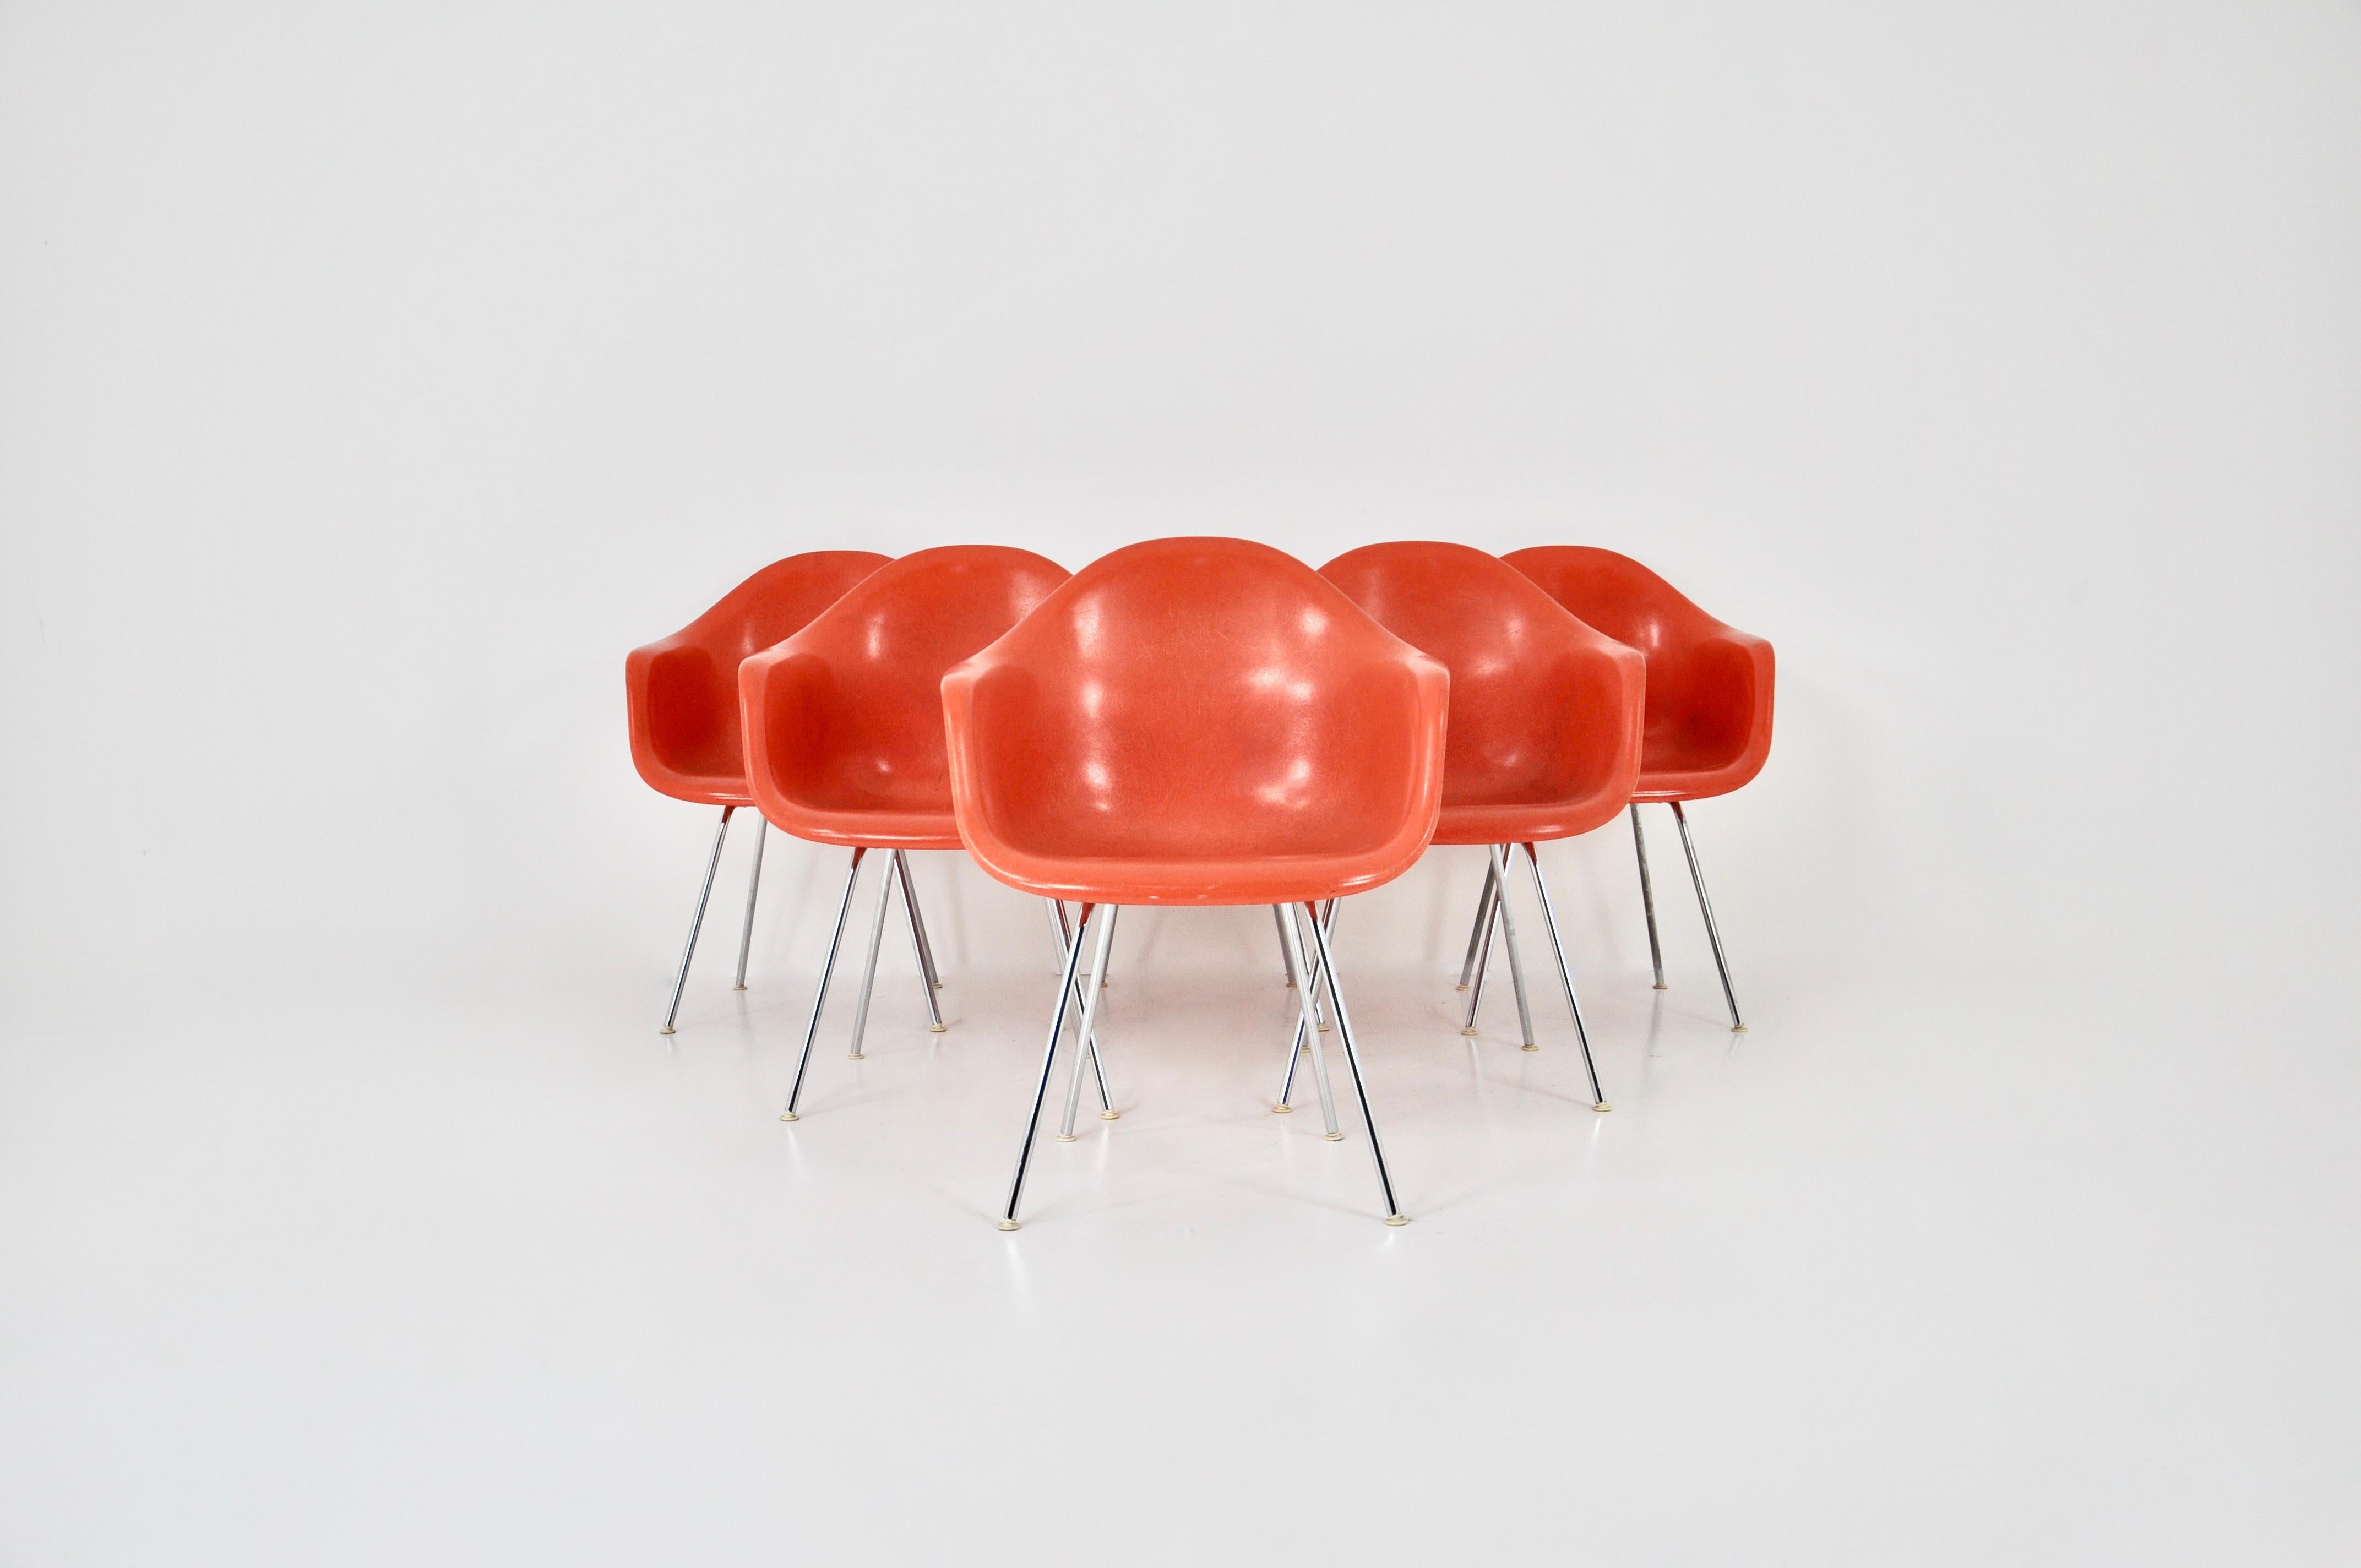 Ensemble de 6 chaises en fibre de verre de couleur orange avec pieds en métal chromé. Estampillé H by Herman Miller sur le fond. Usure due au temps et à l'âge des chaises. Hauteur du siège : 43 cm.